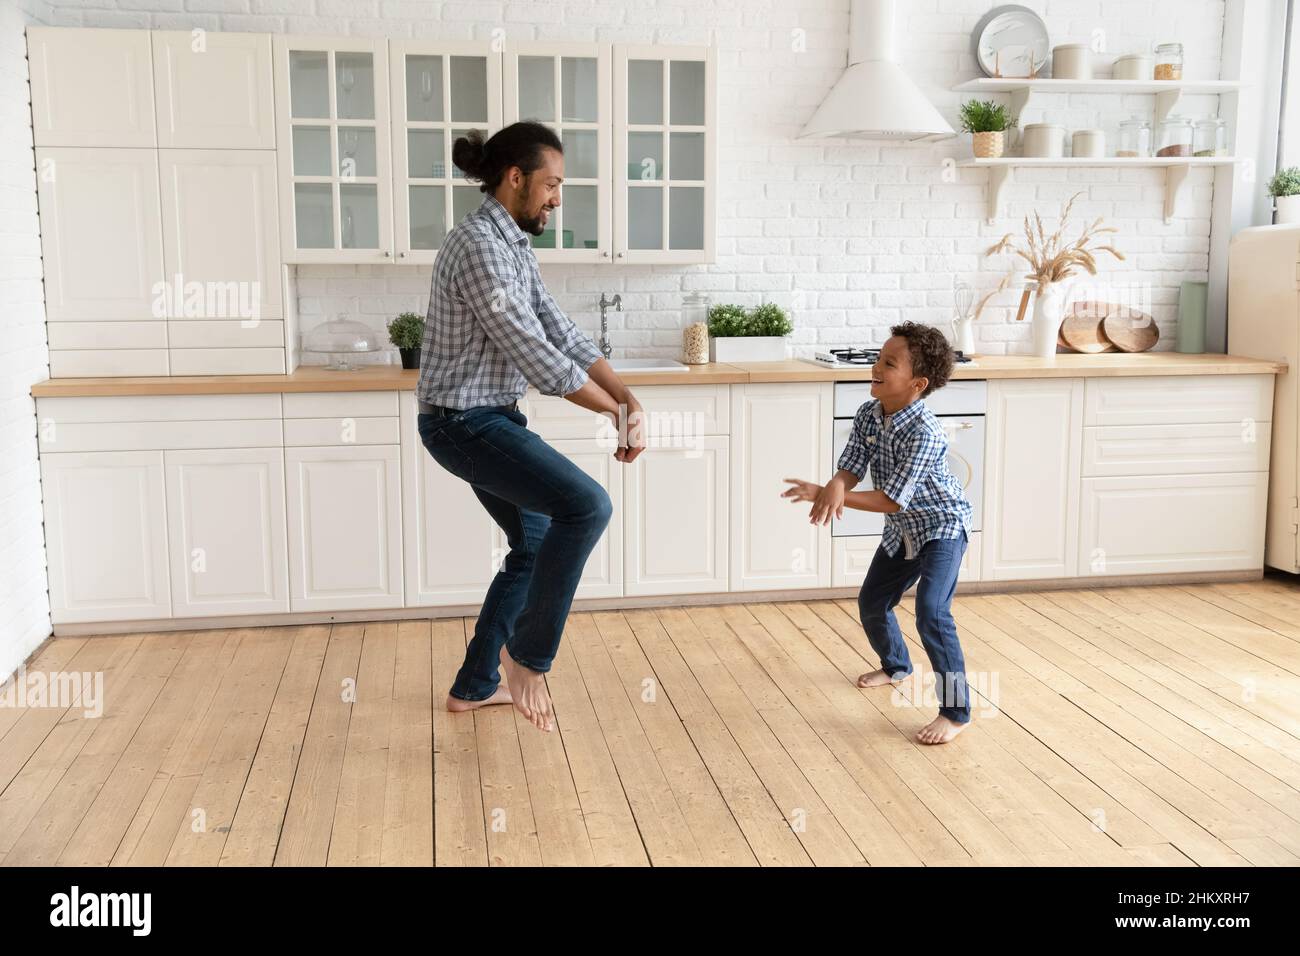 Glücklicher junger afroamerikanischer Vater, der mit einem kleinen Kind tanzt. Stockfoto